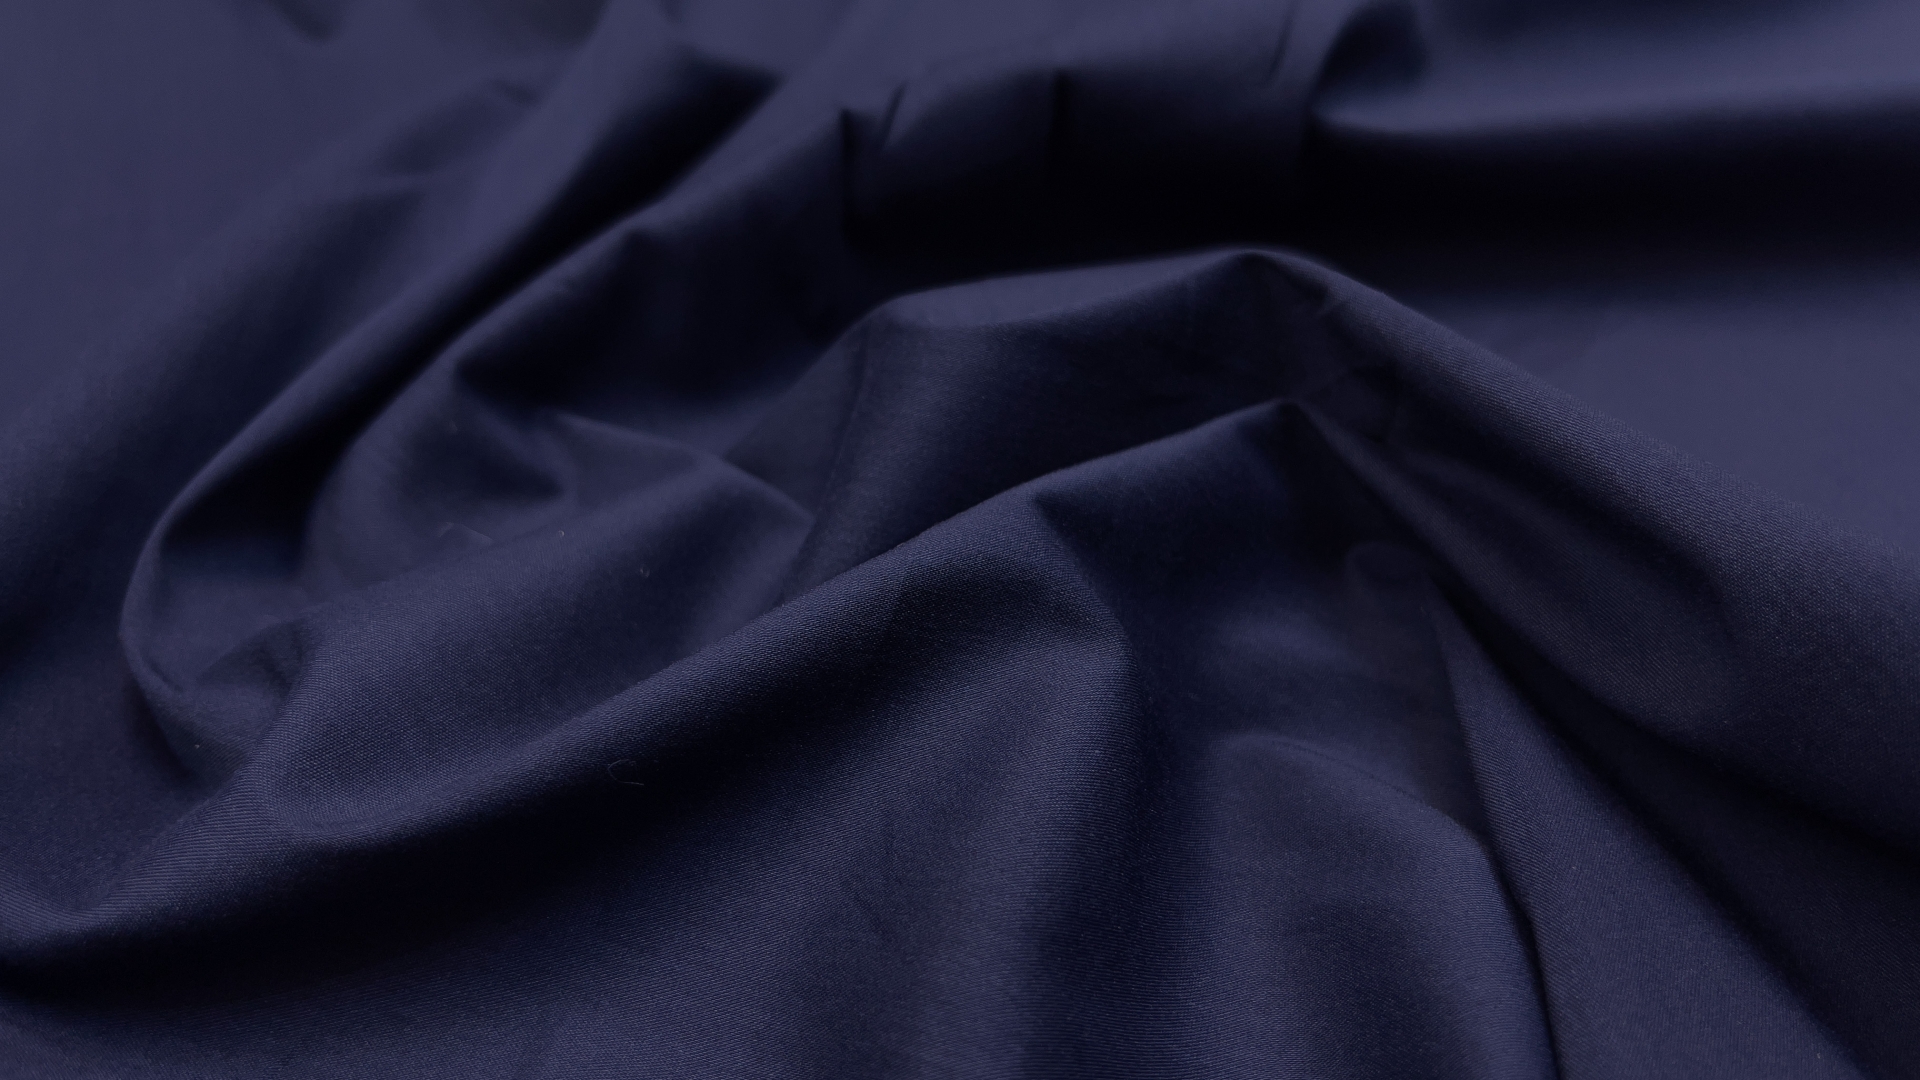 Хлопковый поплин из фабричного стока темно-синего цвета. Плетение очень гладкое, тактильно поплин мягкий. За счет эластана в составе, подойдет для пошива приталенной рубашки. Также хорошо будет смотреться в свободной рубашке-оверсайз.